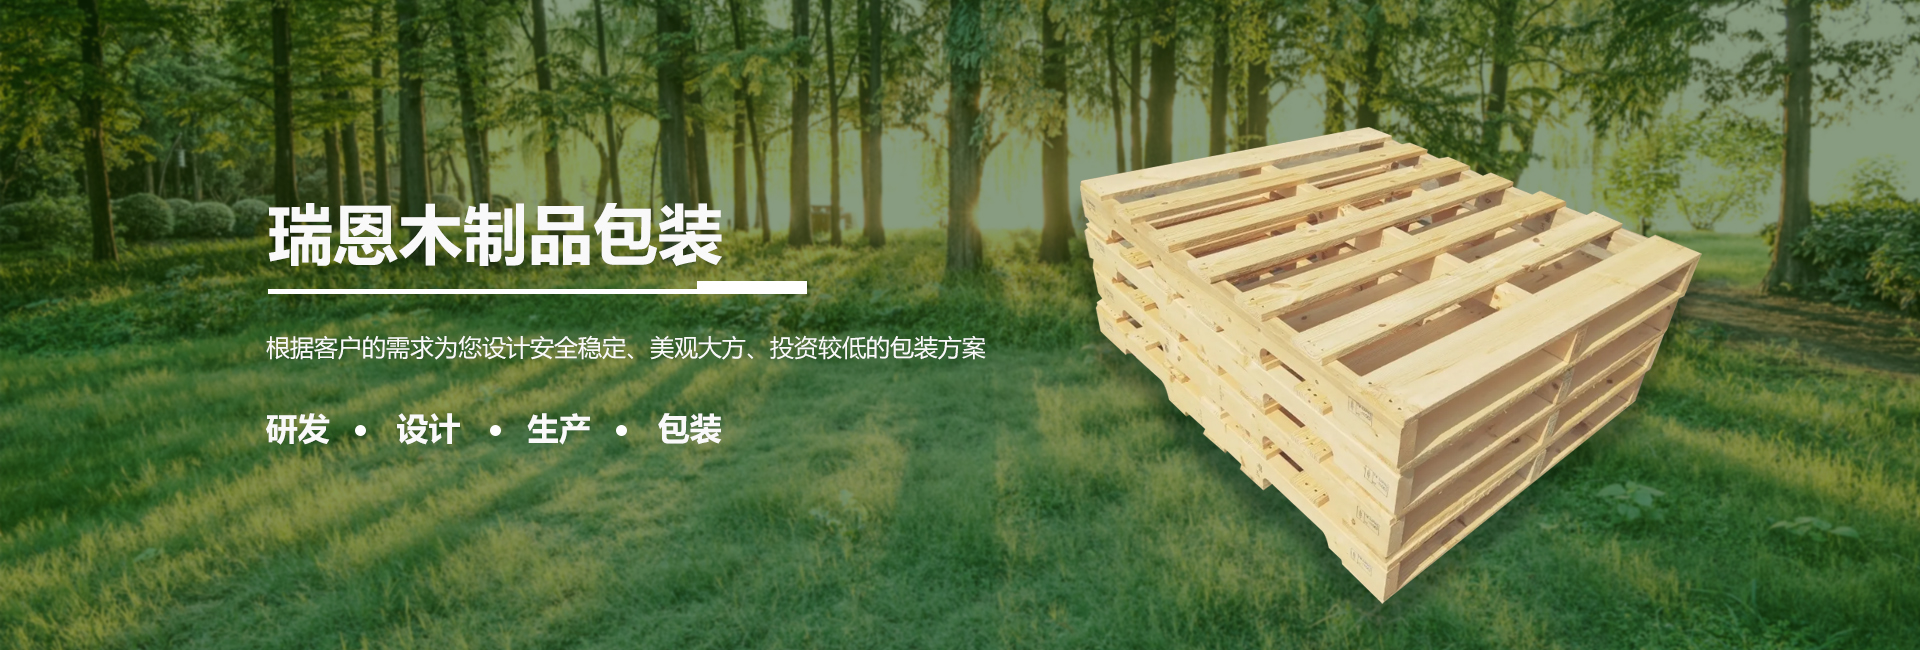 嘉定木棧板